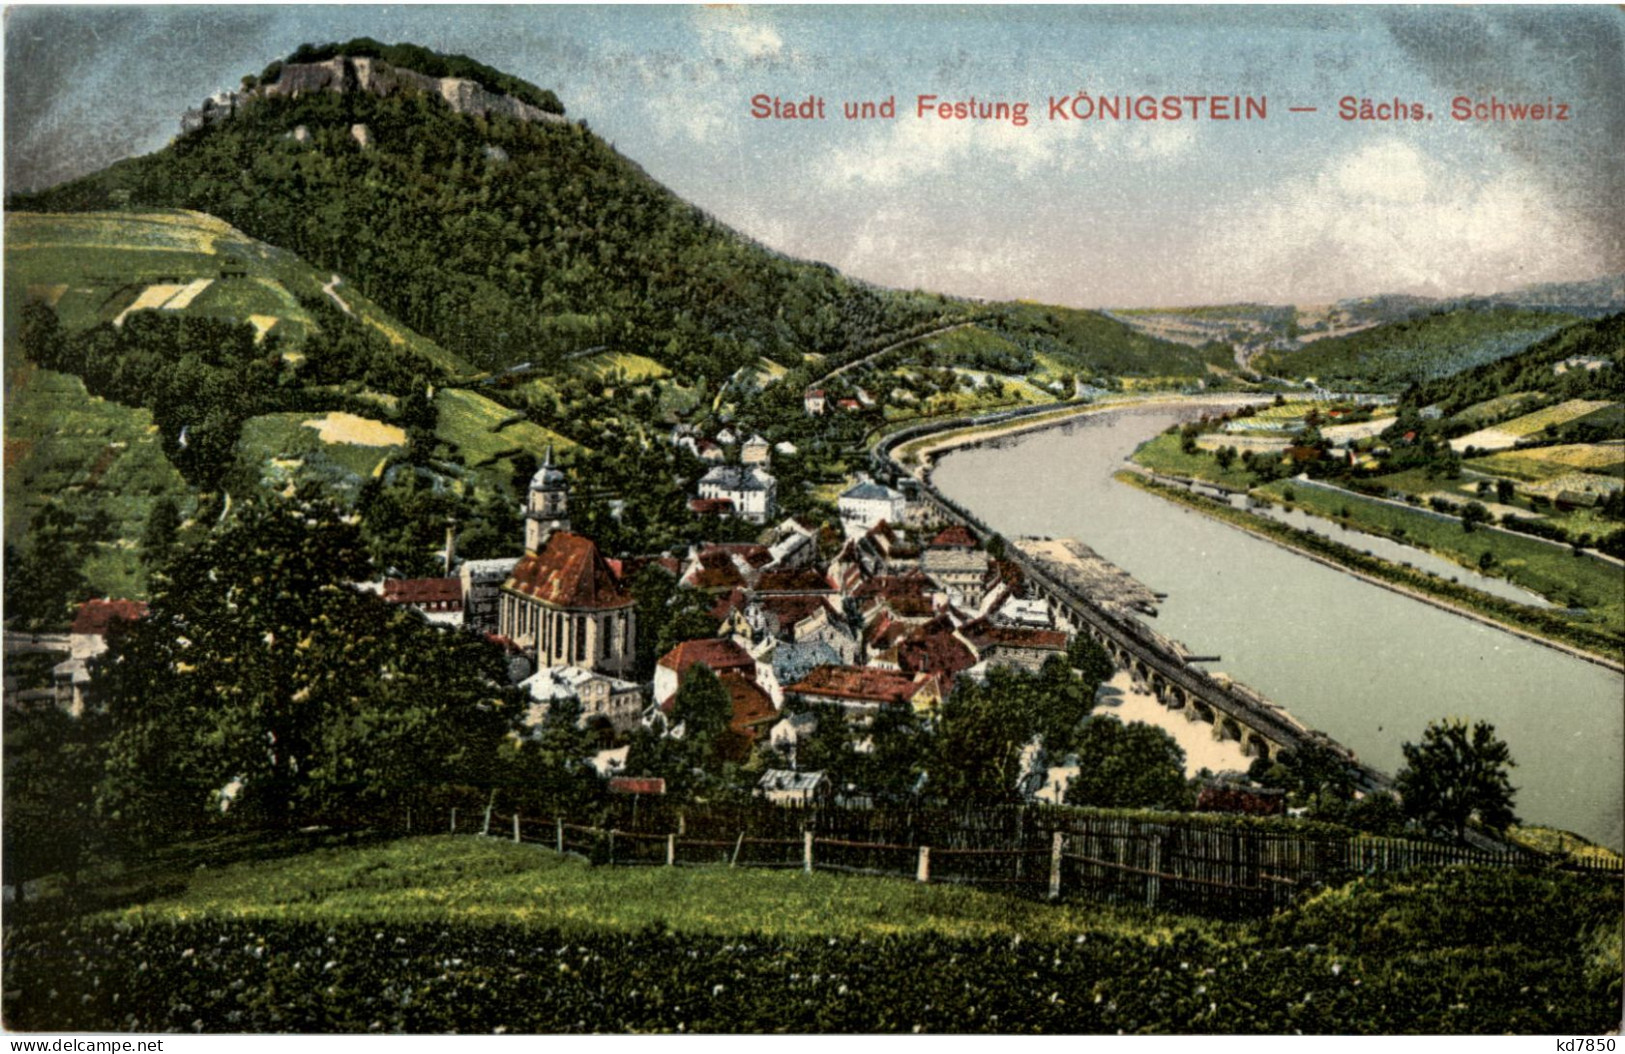 Stadt Und Festung Königstein - Koenigstein (Saechs. Schw.)